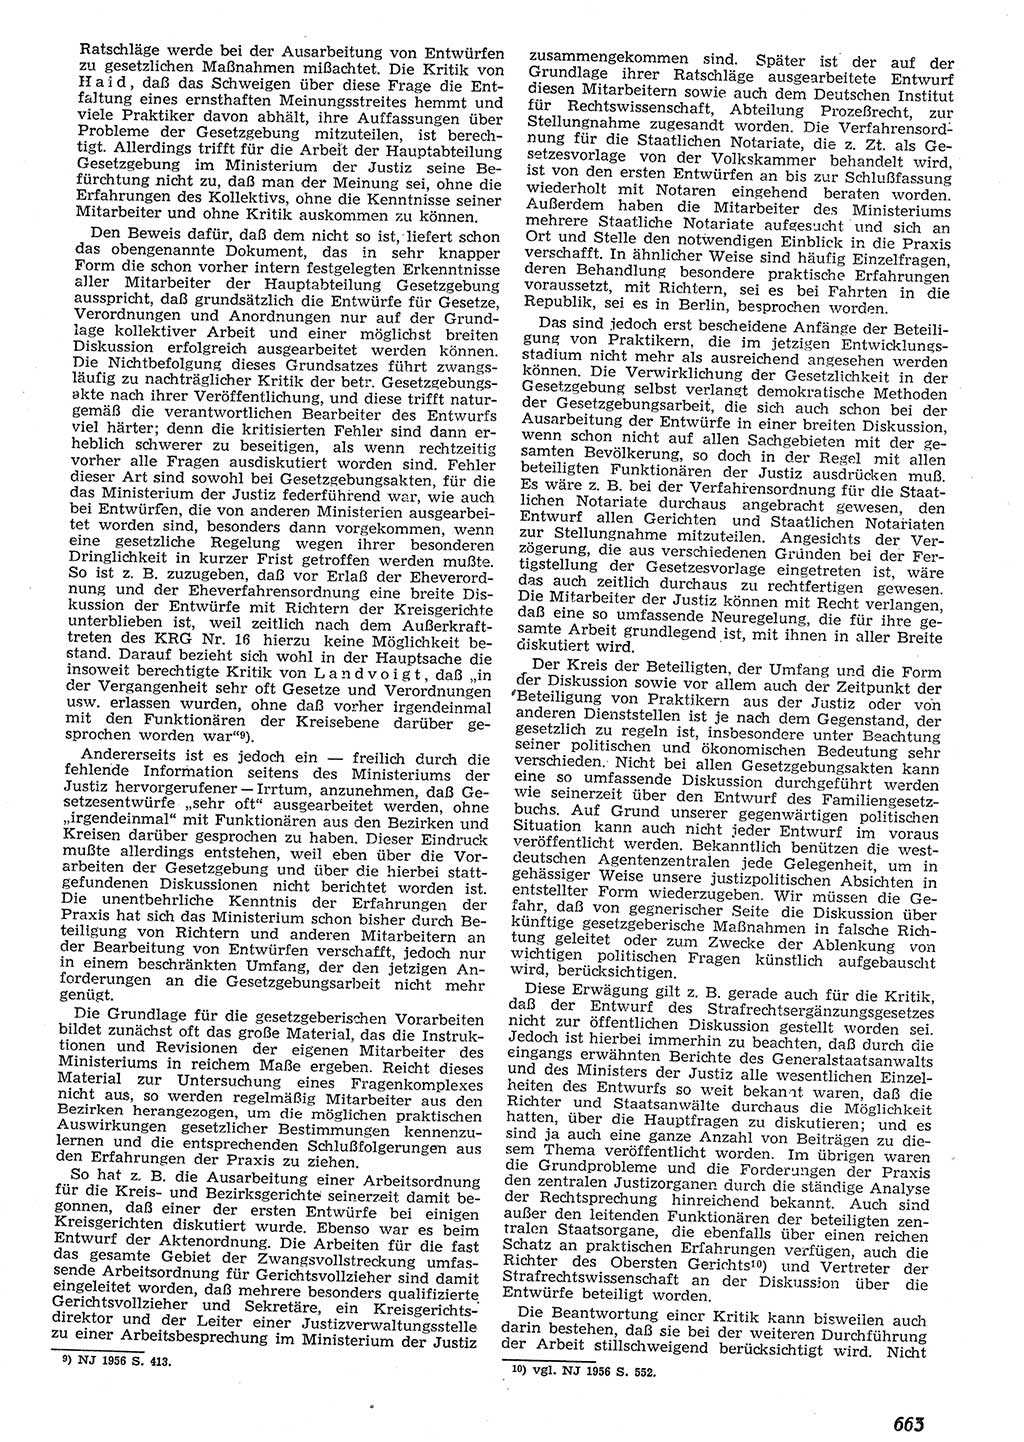 Neue Justiz (NJ), Zeitschrift für Recht und Rechtswissenschaft [Deutsche Demokratische Republik (DDR)], 10. Jahrgang 1956, Seite 663 (NJ DDR 1956, S. 663)